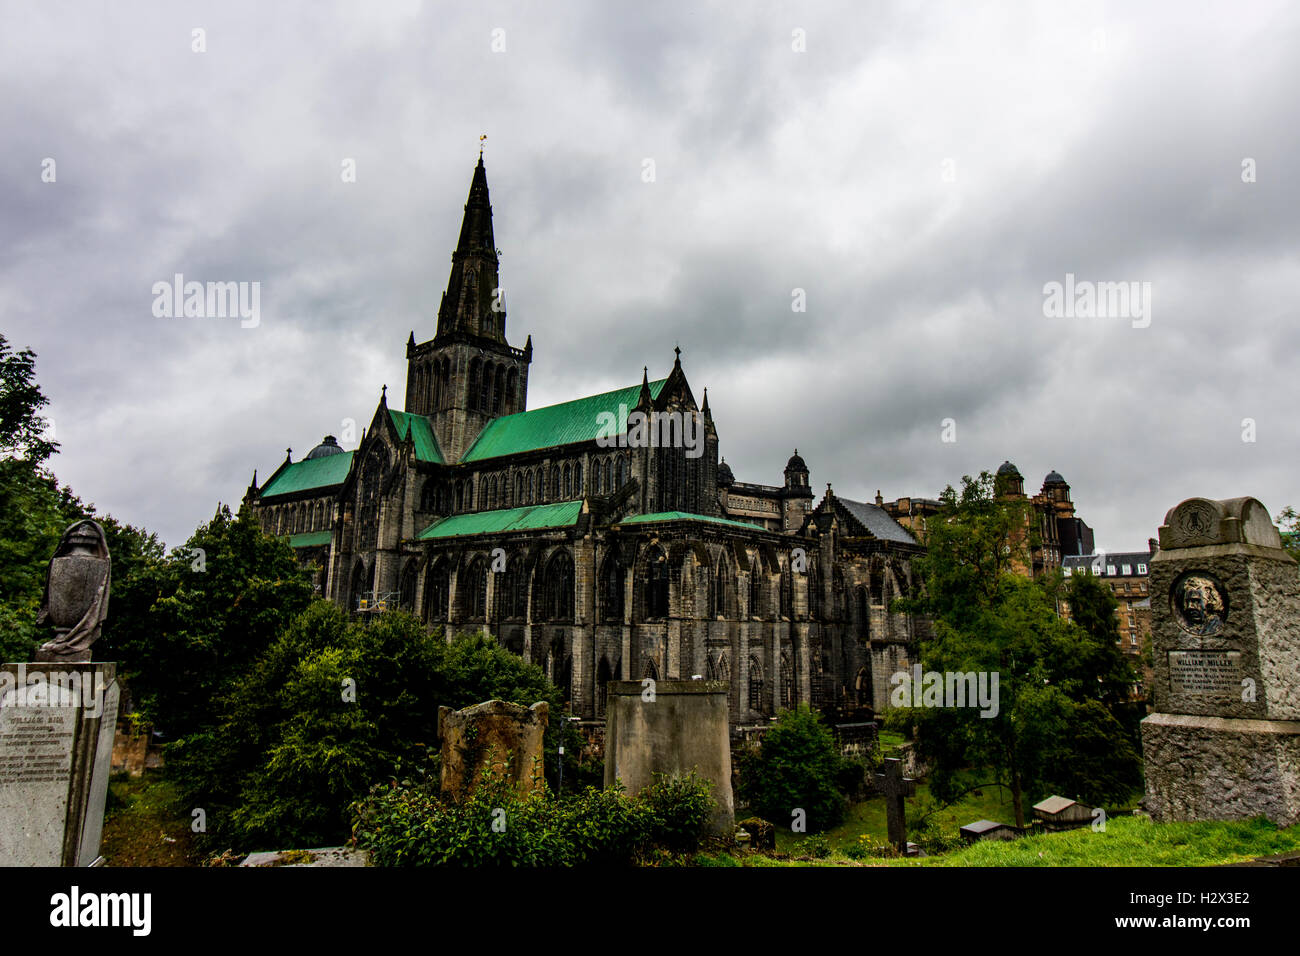 Belle la cathédrale de Glasgow, photographié à partir de la Nécropole cimetière un jour de pluie avec Moody de nuages de pluie. Banque D'Images